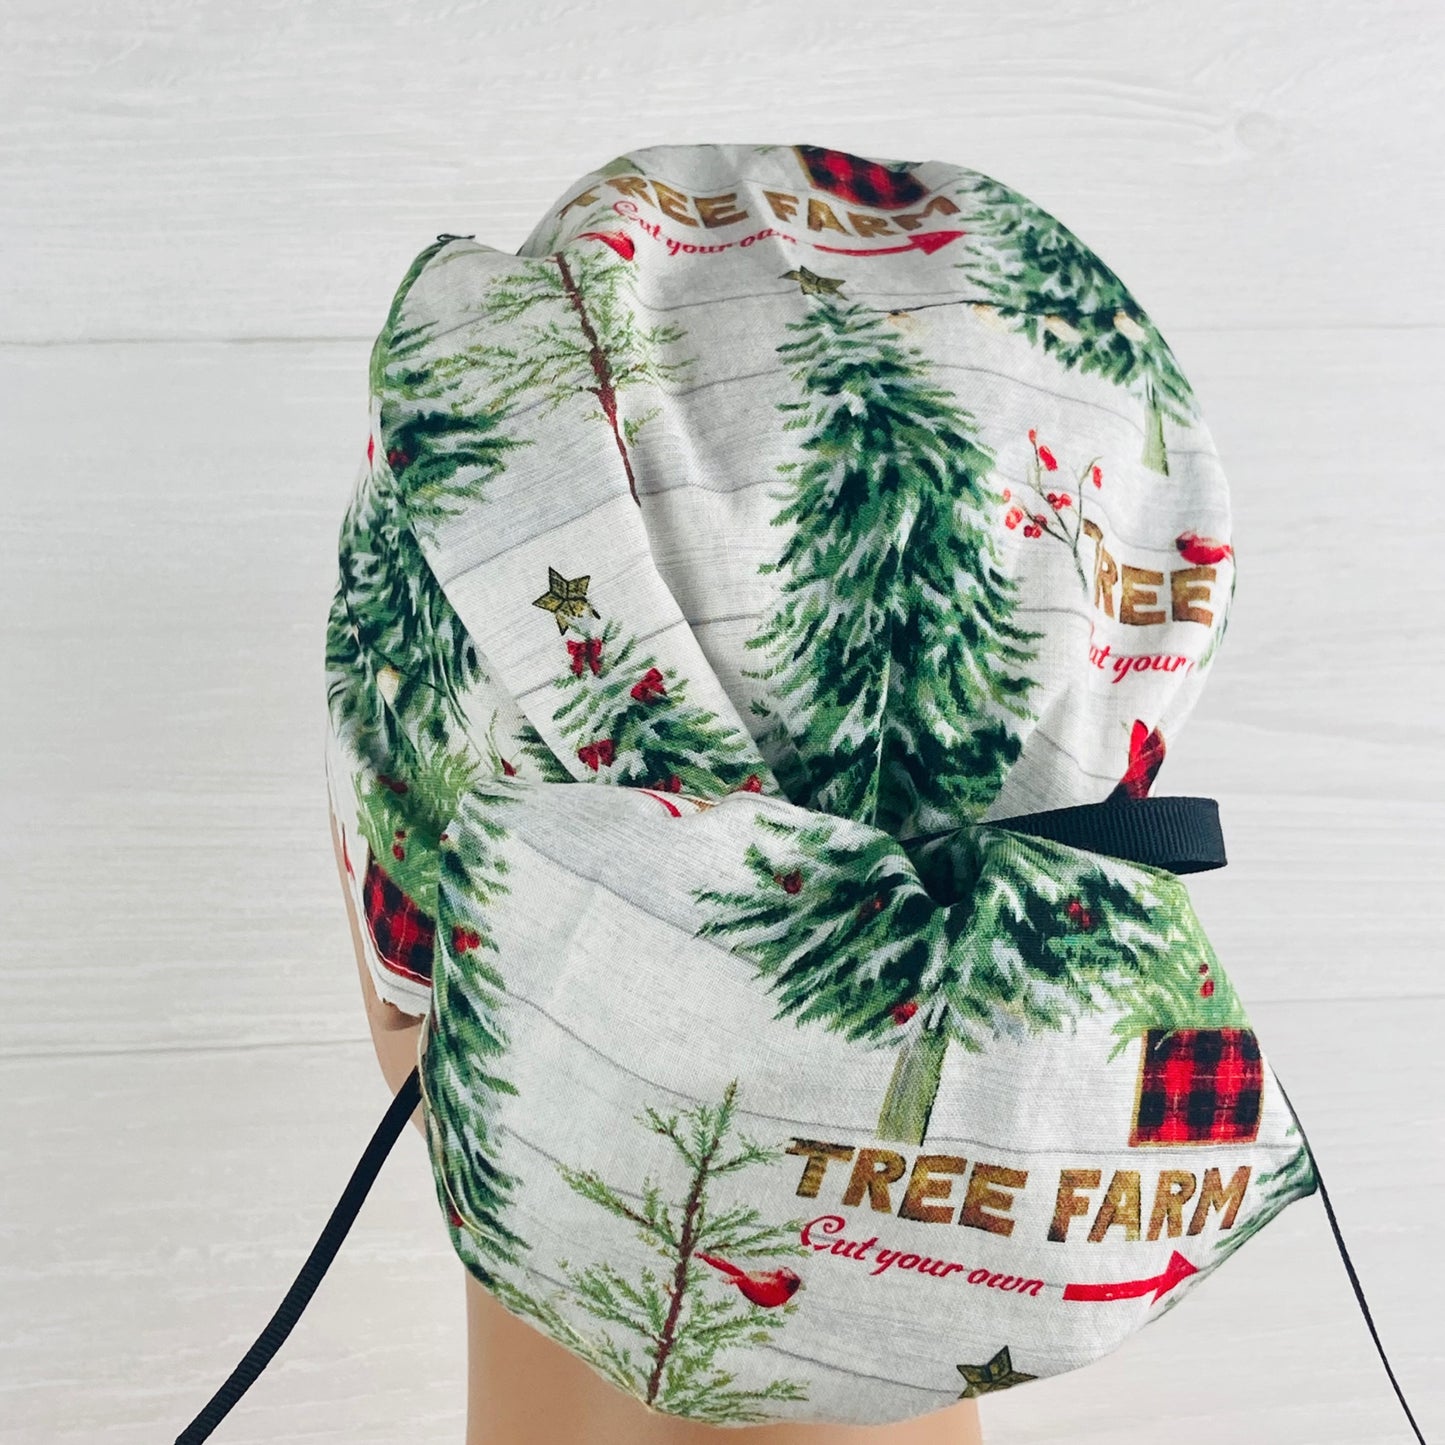 Christmas Tree Farm Ponytail Hat